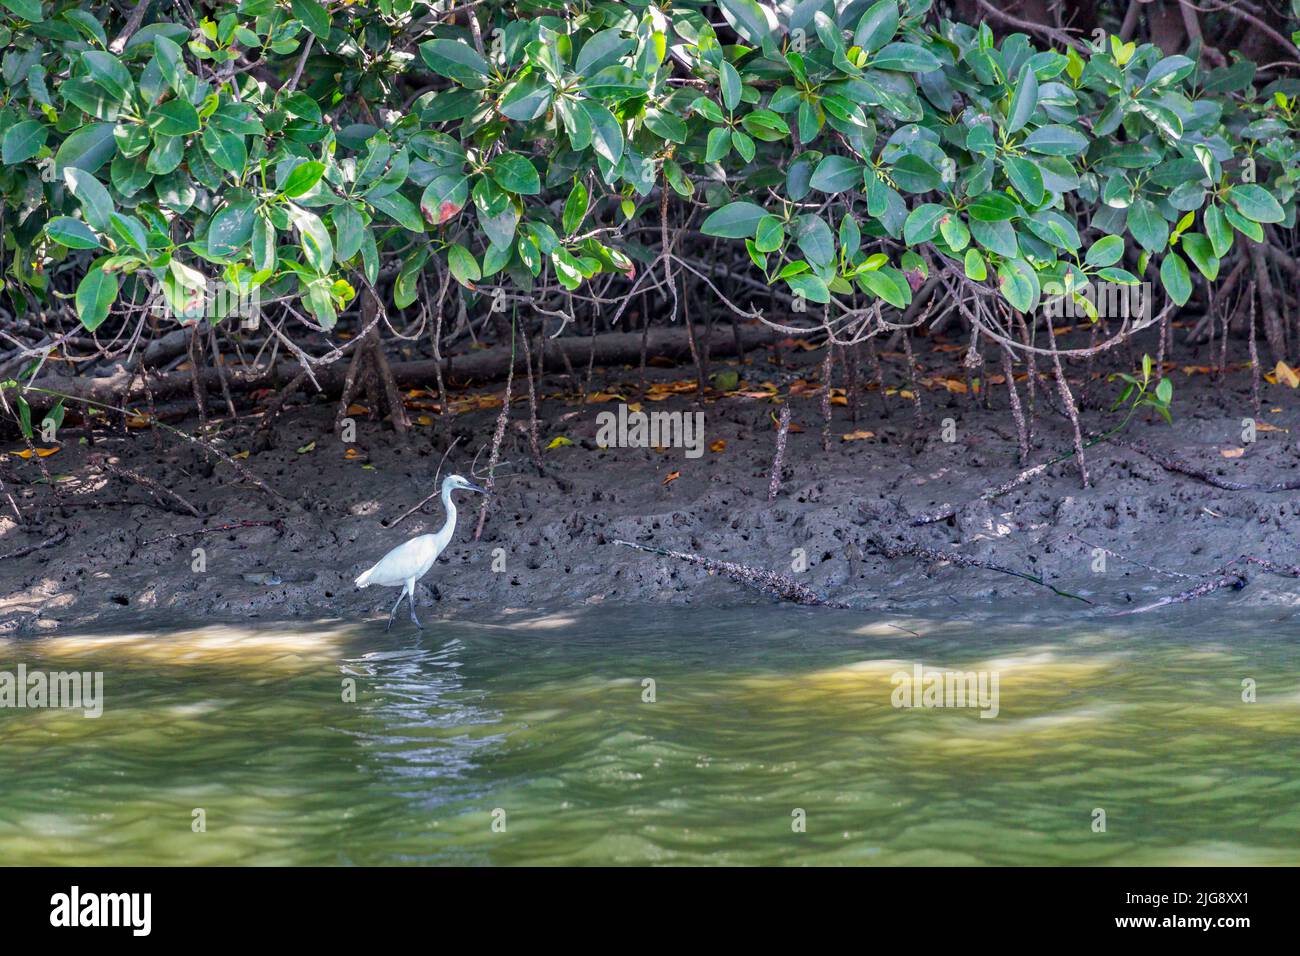 White Egret, (Casmerodius albus), fleuve Khao Daeng, parc national Khao Sam Roi Yot, province de Prachuap Khiri Khan, Thaïlande, Asie Banque D'Images